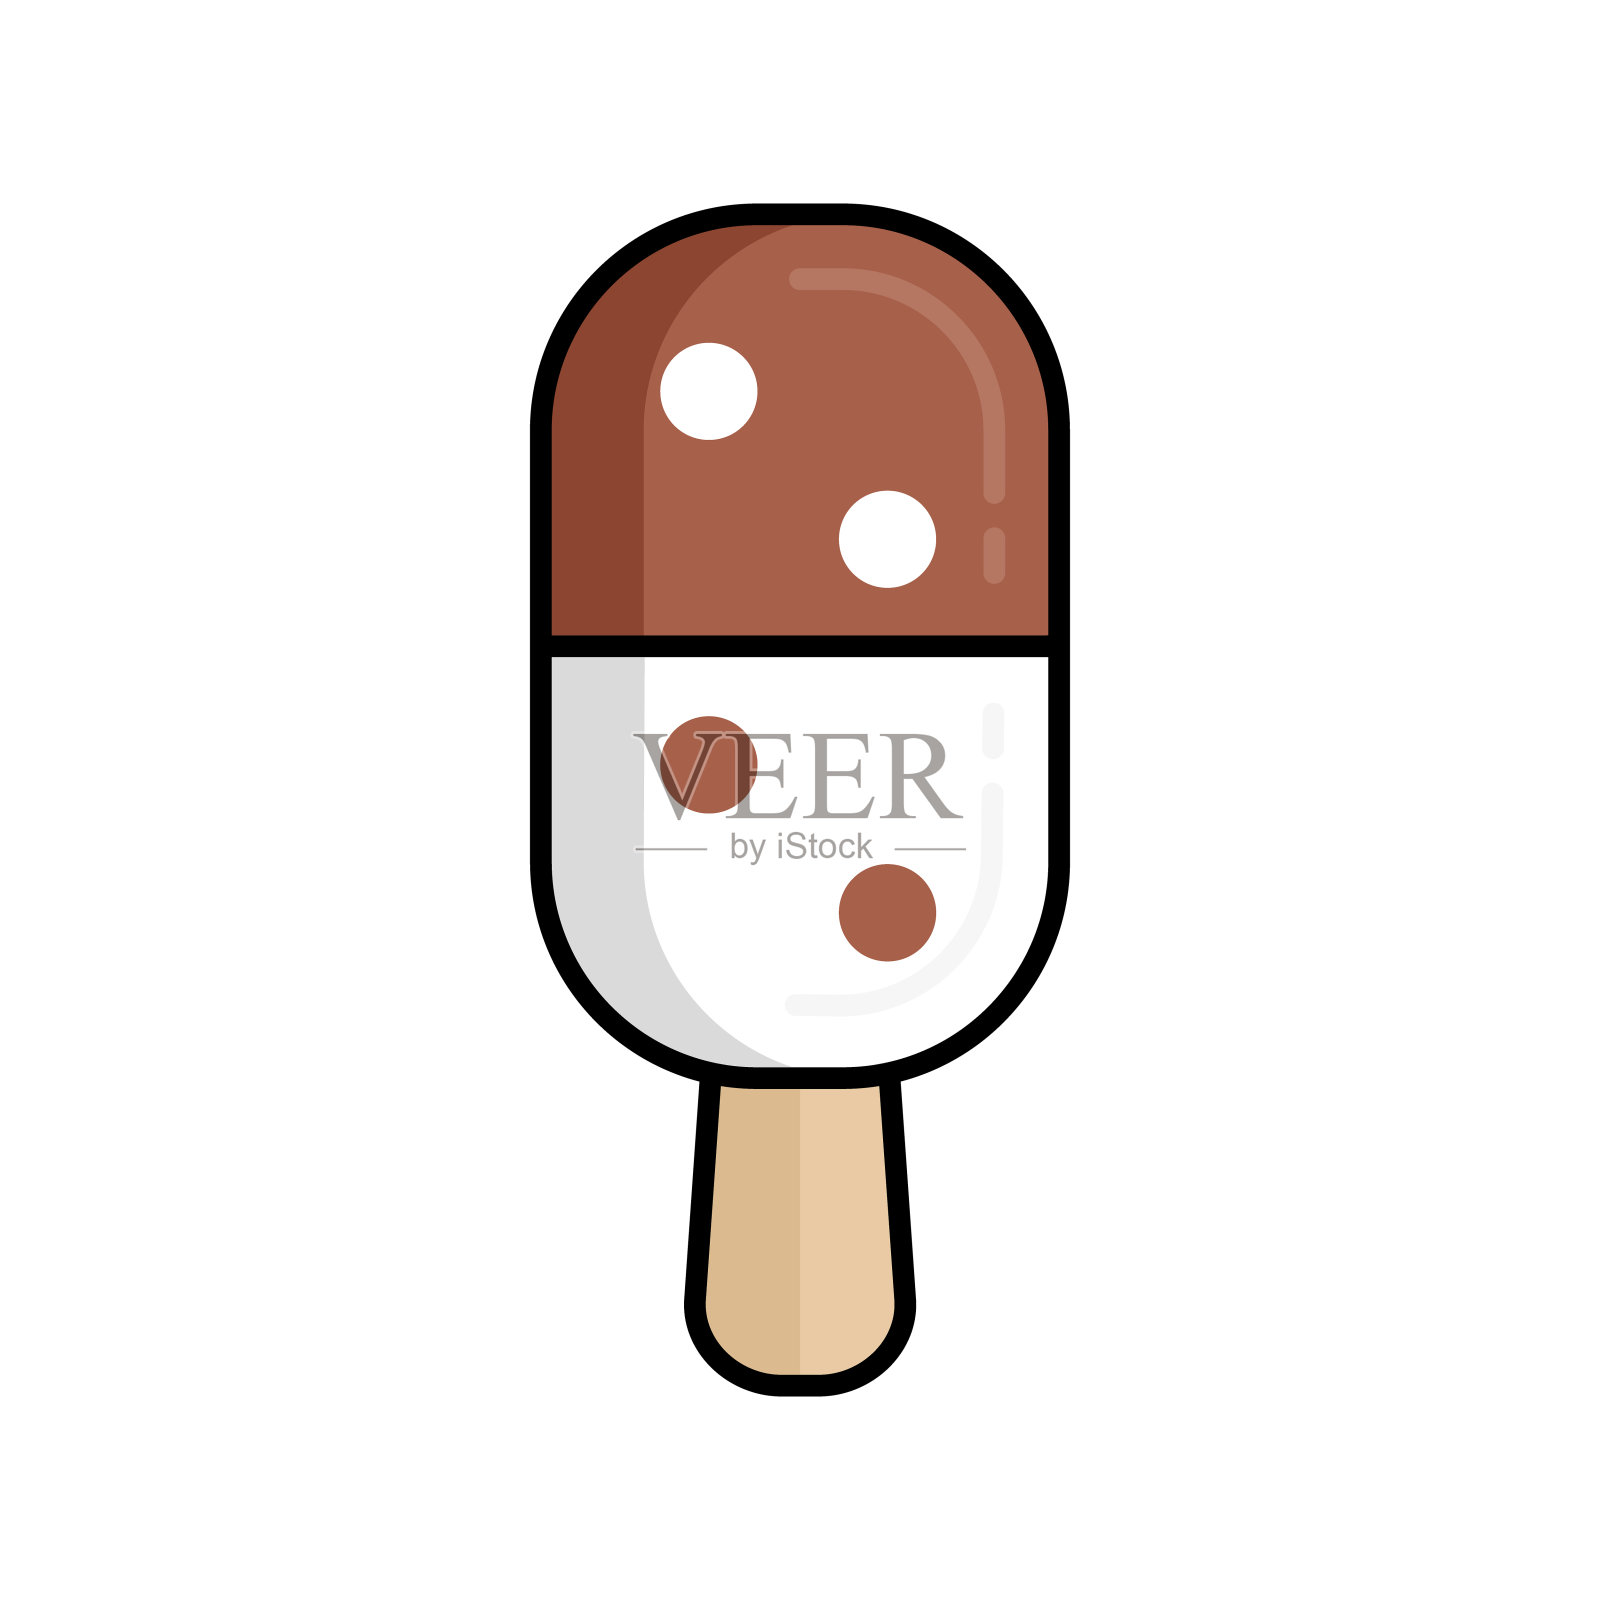 多米诺骨牌形状的冰淇淋冰棒。公司生产冰淇淋和甜品产品设计元素图片